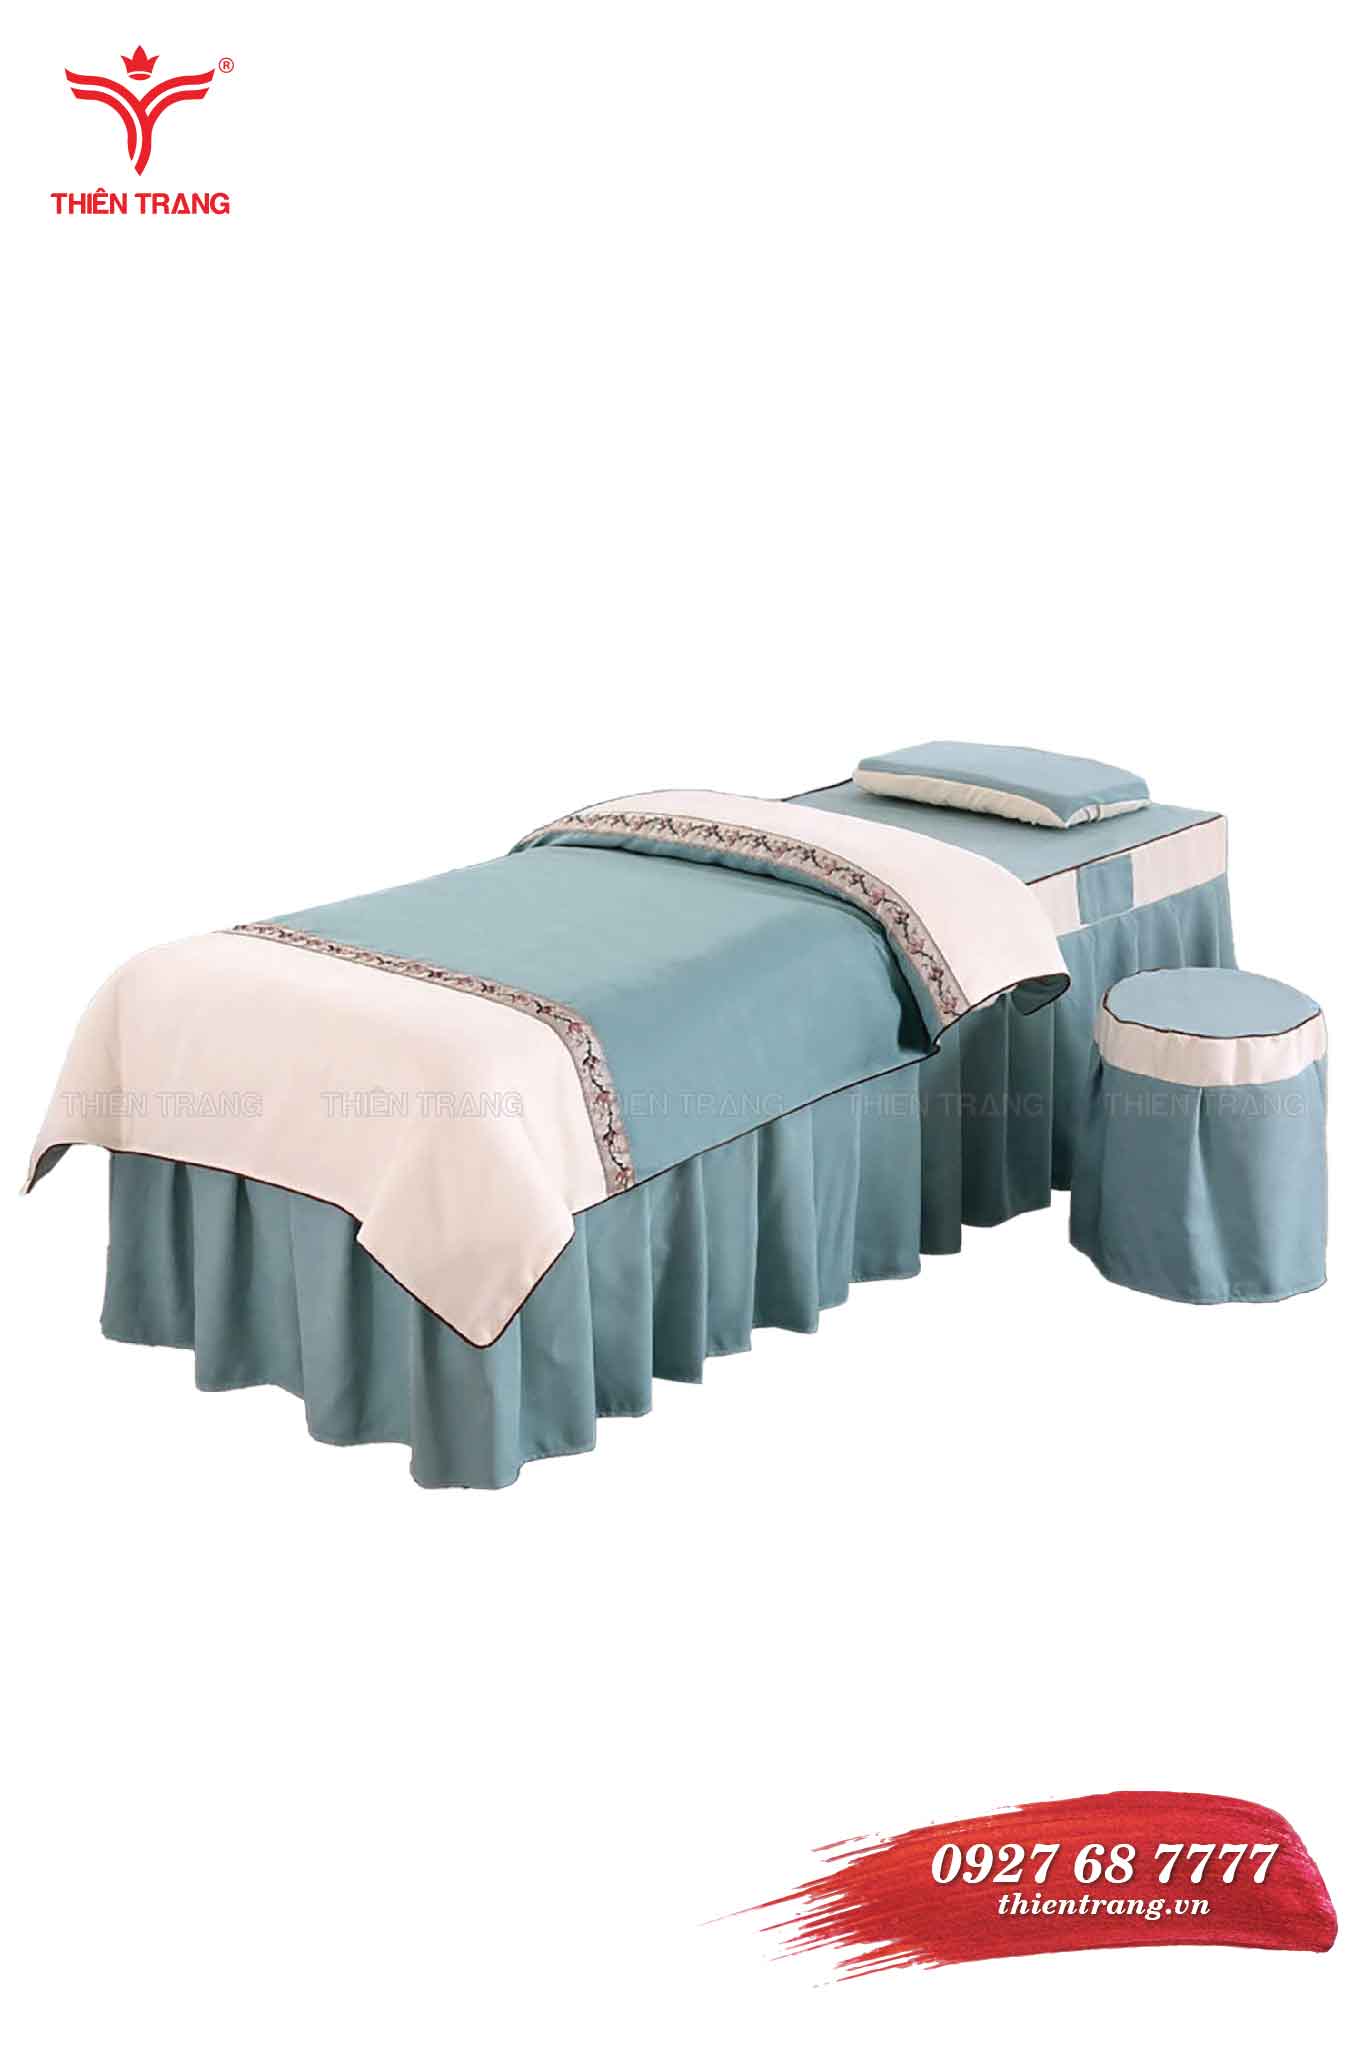 Ga giường spa TTSPAGG53 màu xanh dương nhạt